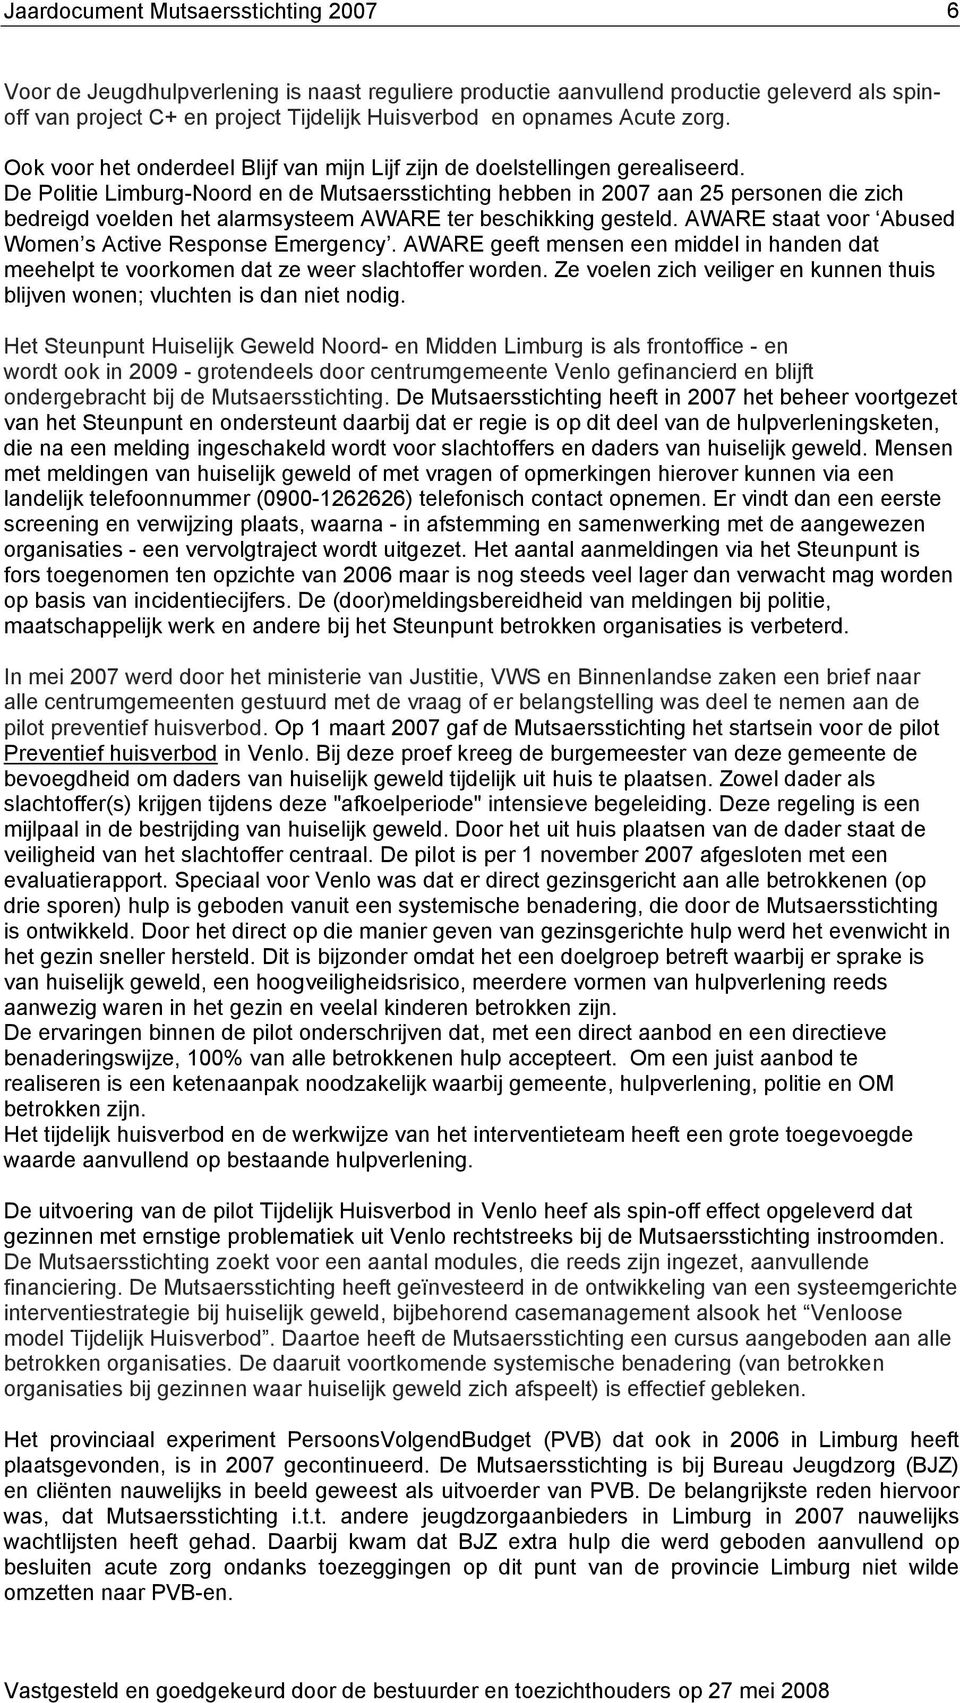 De Politie Limburg-Noord en de Mutsaersstichting hebben in 2007 aan 25 personen die zich bedreigd voelden het alarmsysteem AWARE ter beschikking gesteld.